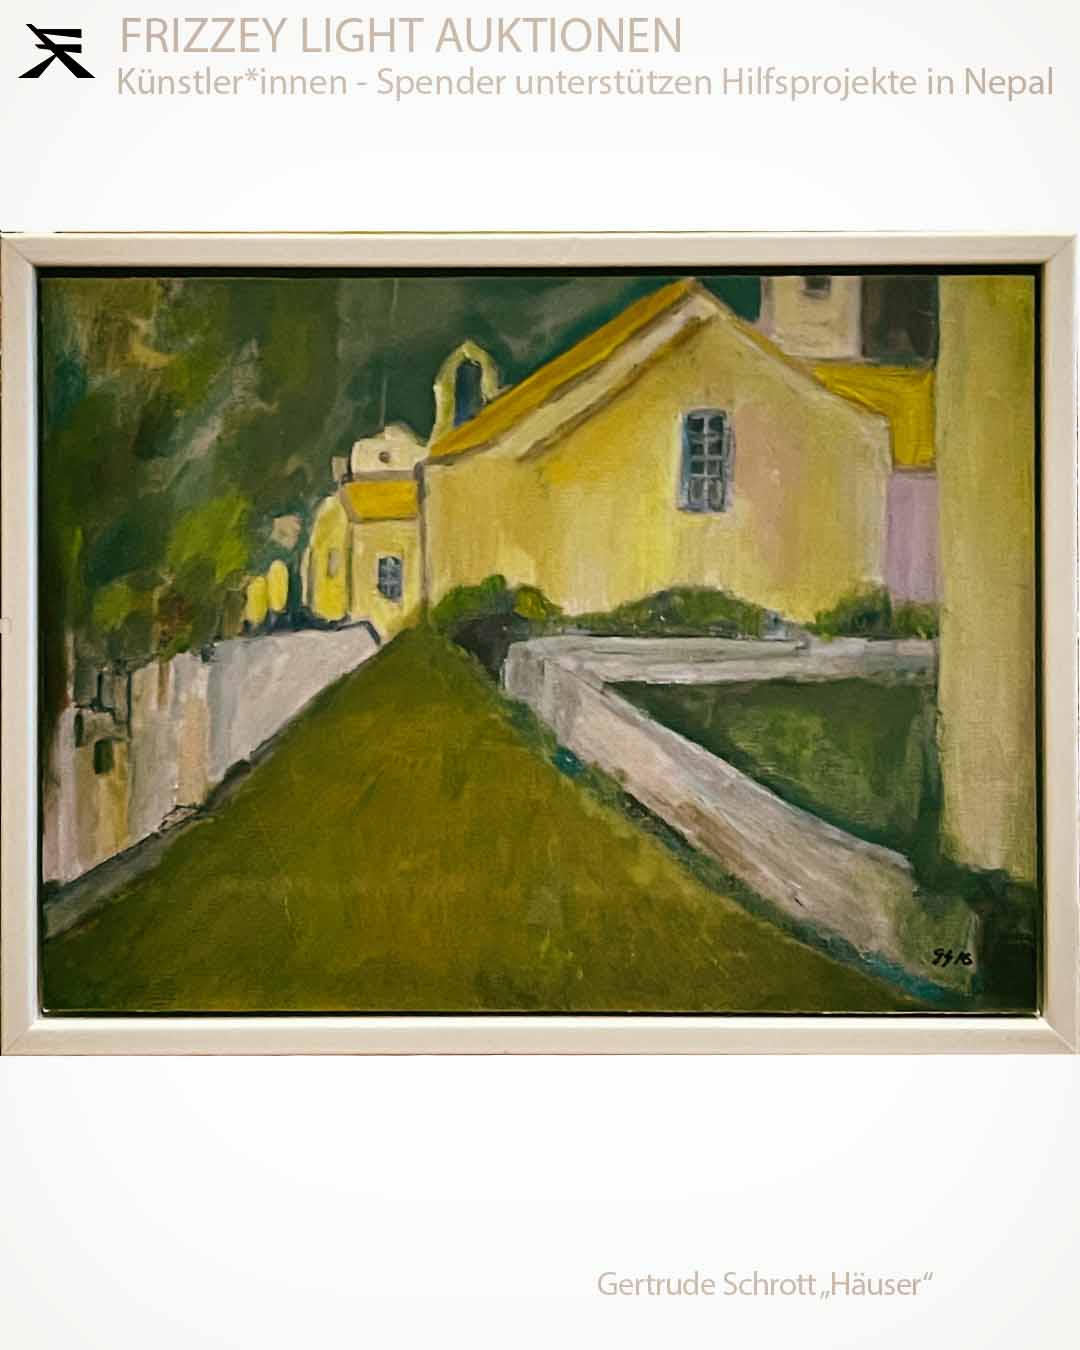 „Häuser in der Toscana“ by Gertrude Schrott